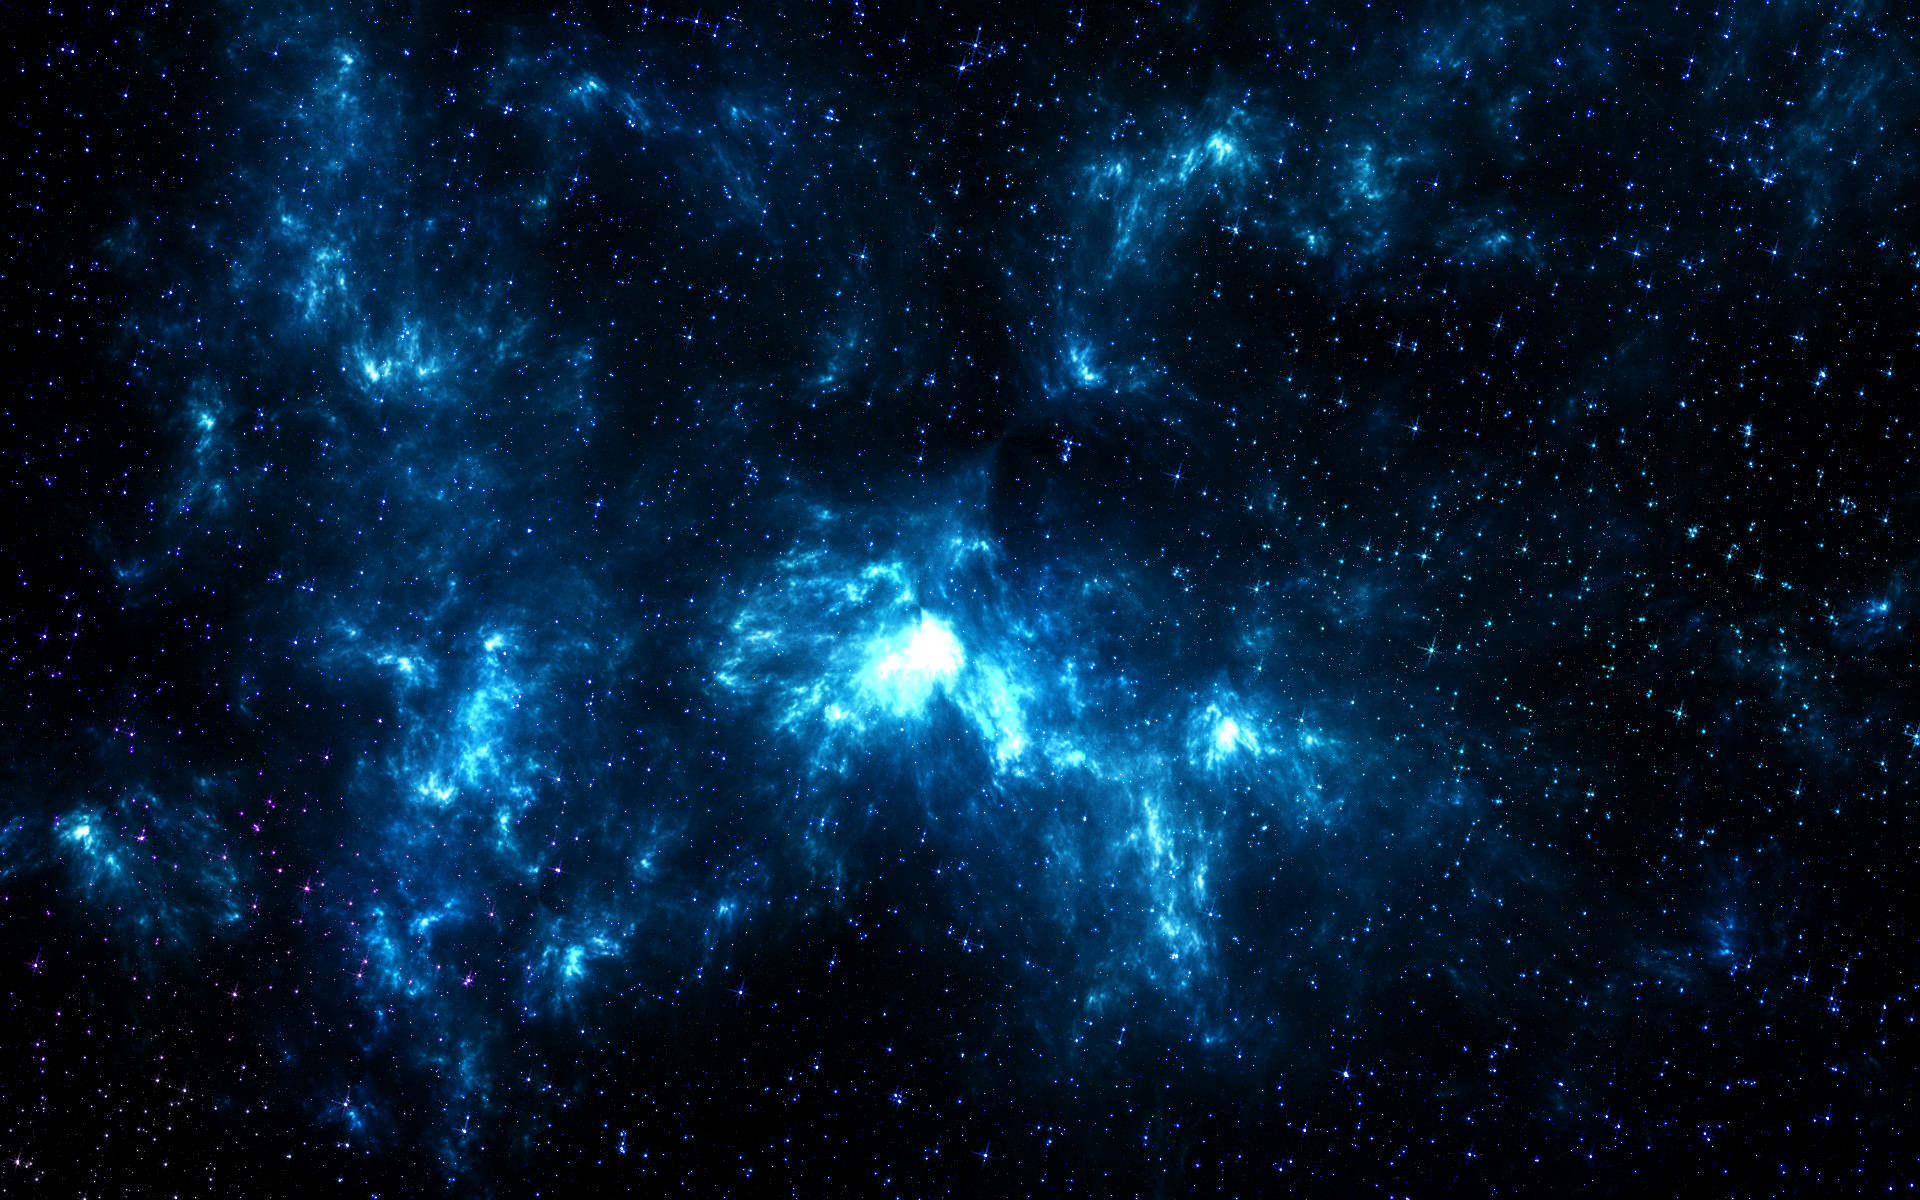 Blue Space by darkdissolution on DeviantArt